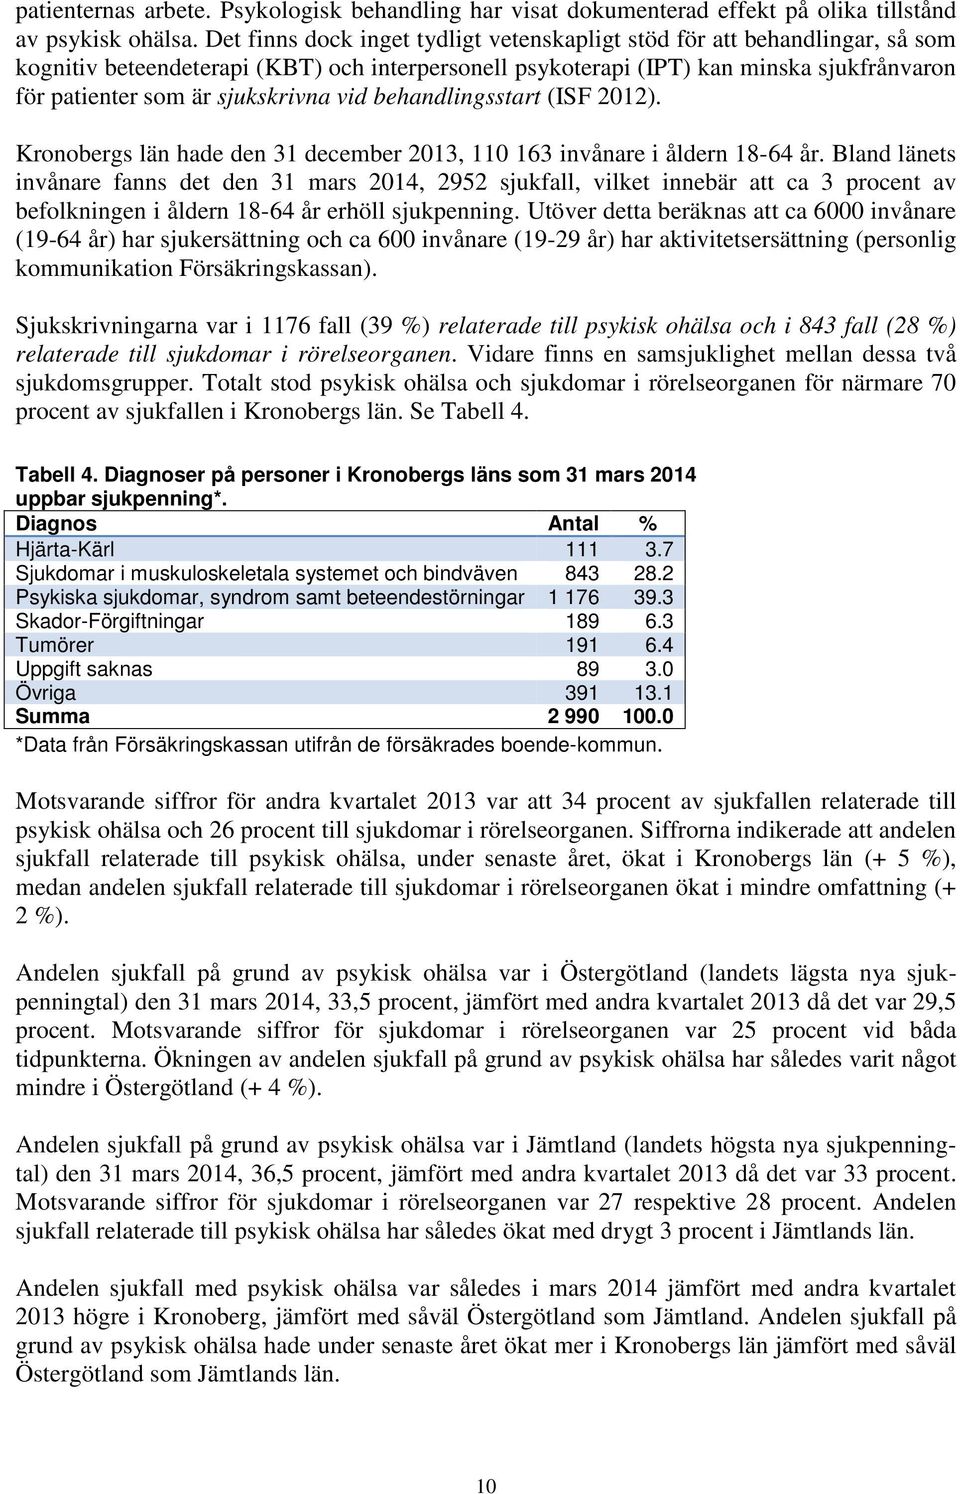 sjukskrivna vid behandlingsstart (ISF 2012). Kronobergs län hade den 31 december 2013, 110 163 invånare i åldern 18-64 år.